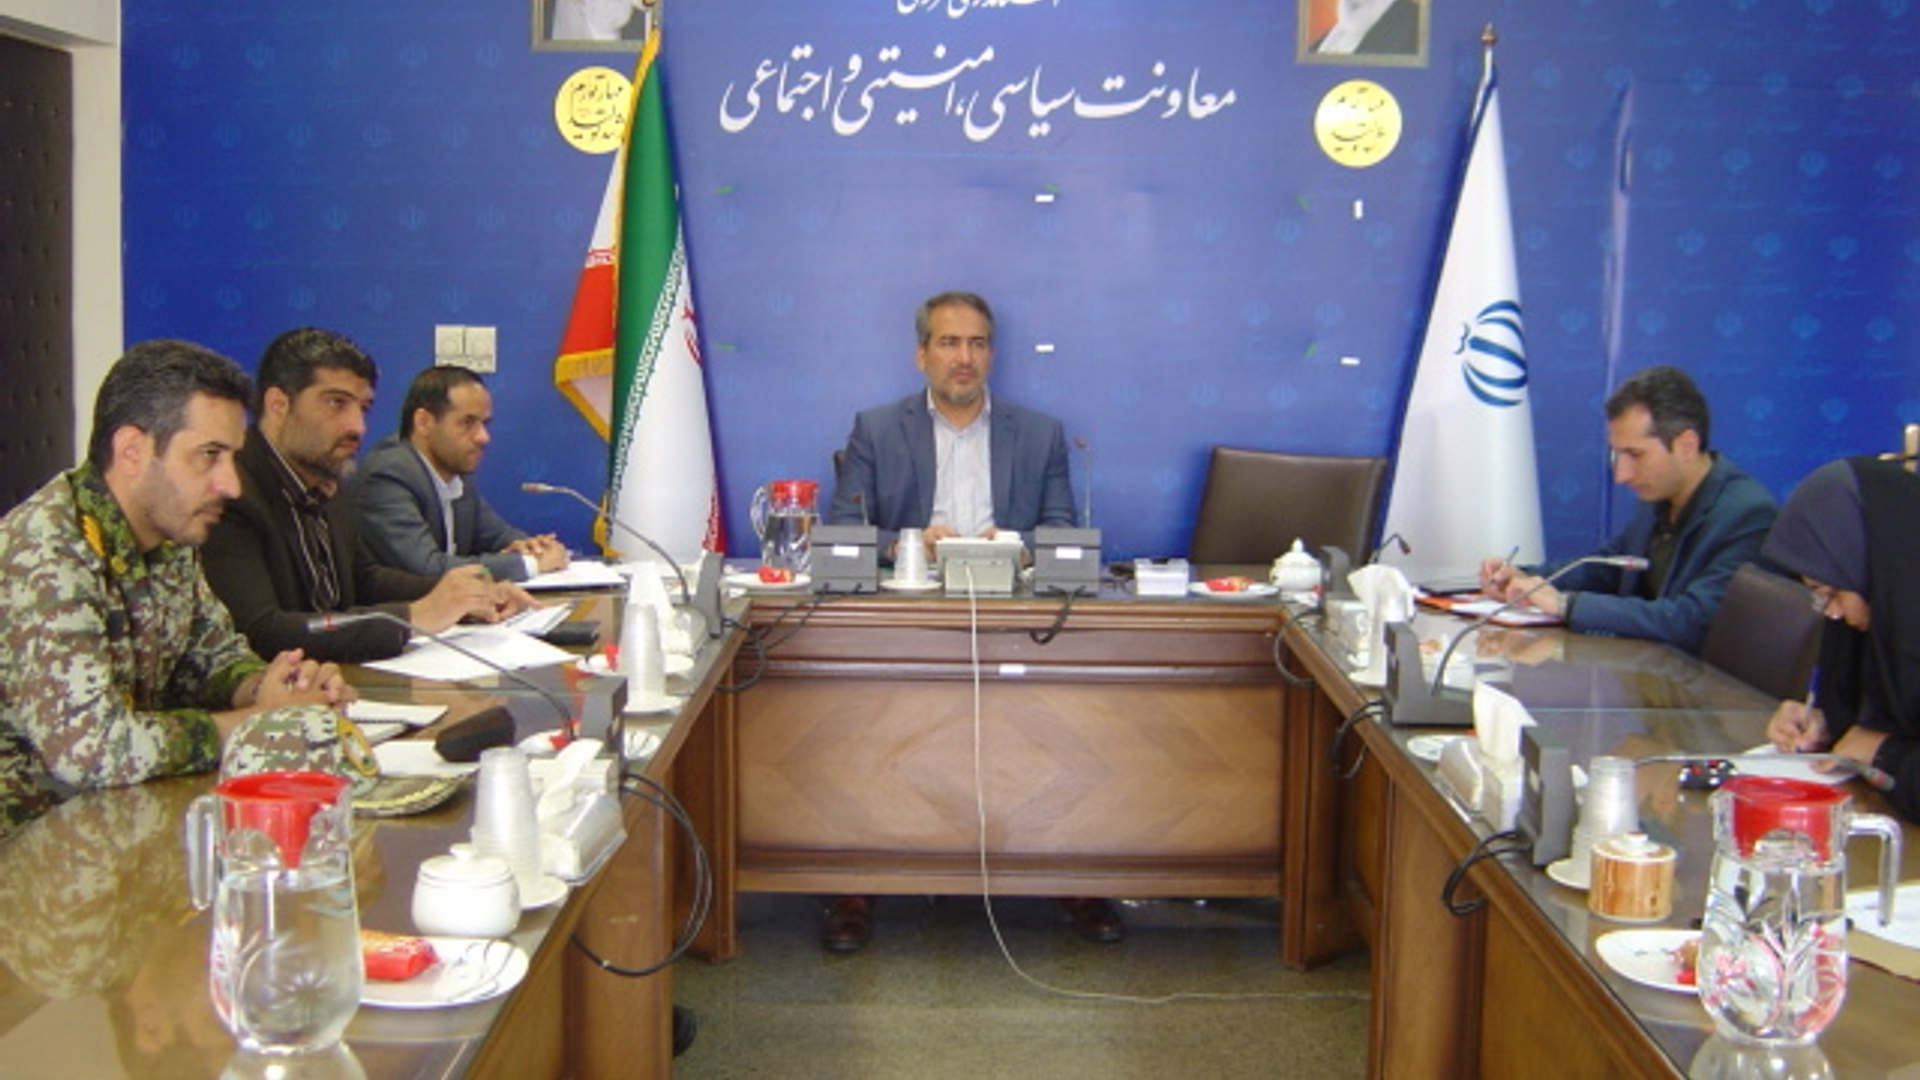 جلسه کمیسیون برآورد اطلاعات استان ساعت 10 صبح روز یکشنبه مورخ 31-2-1402 به ریاست آقای رحیمی تبار مدیر کل امنیتی و انتظامی برگزار گردید.